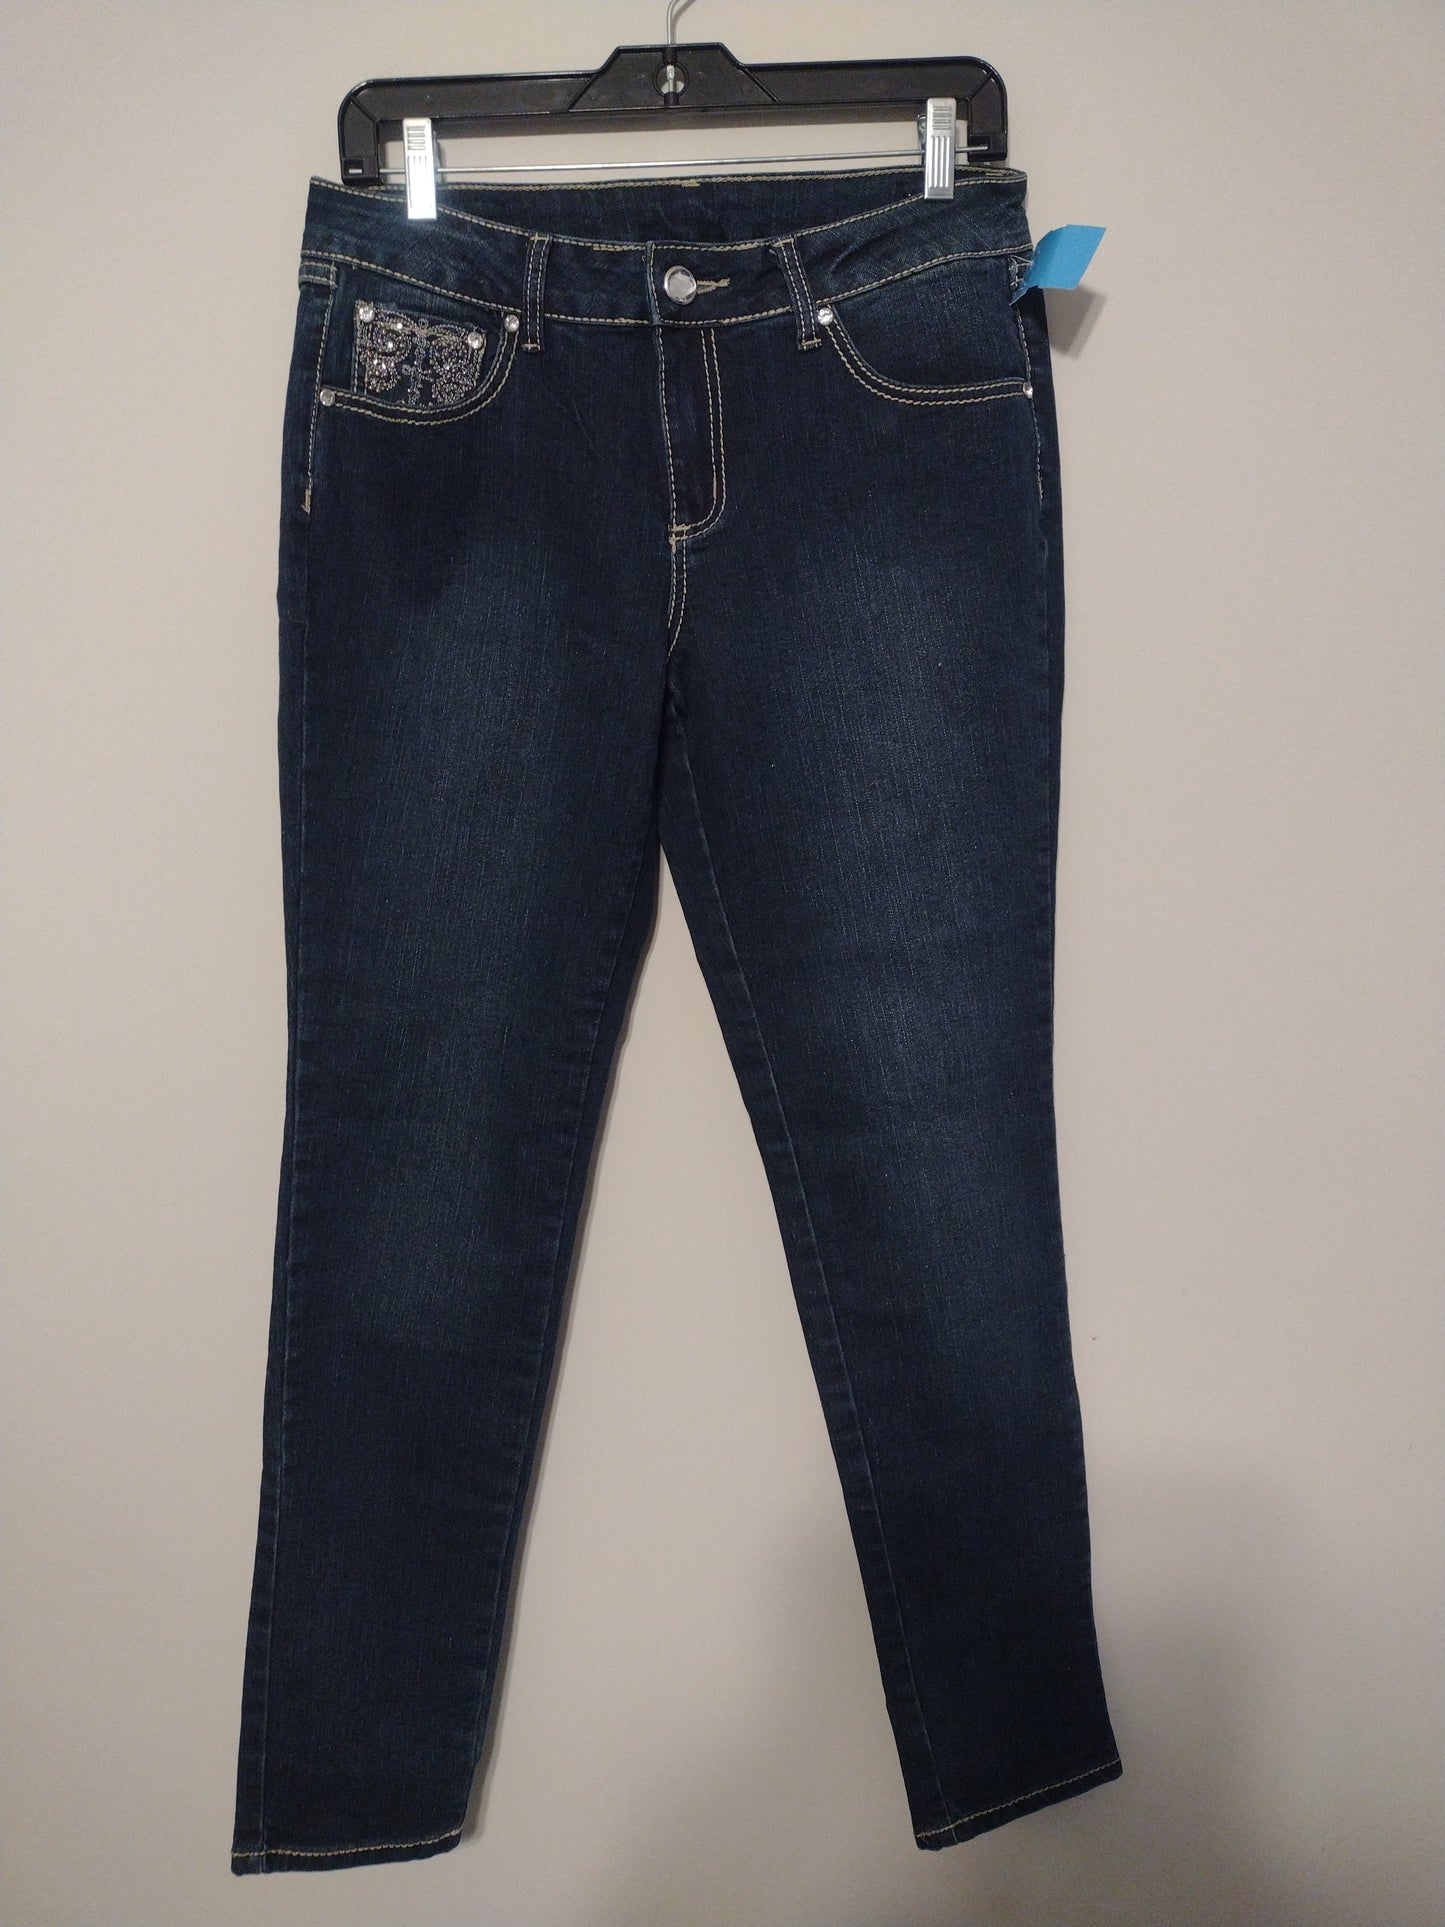 Jeans Skinny By Jw  Size: 8